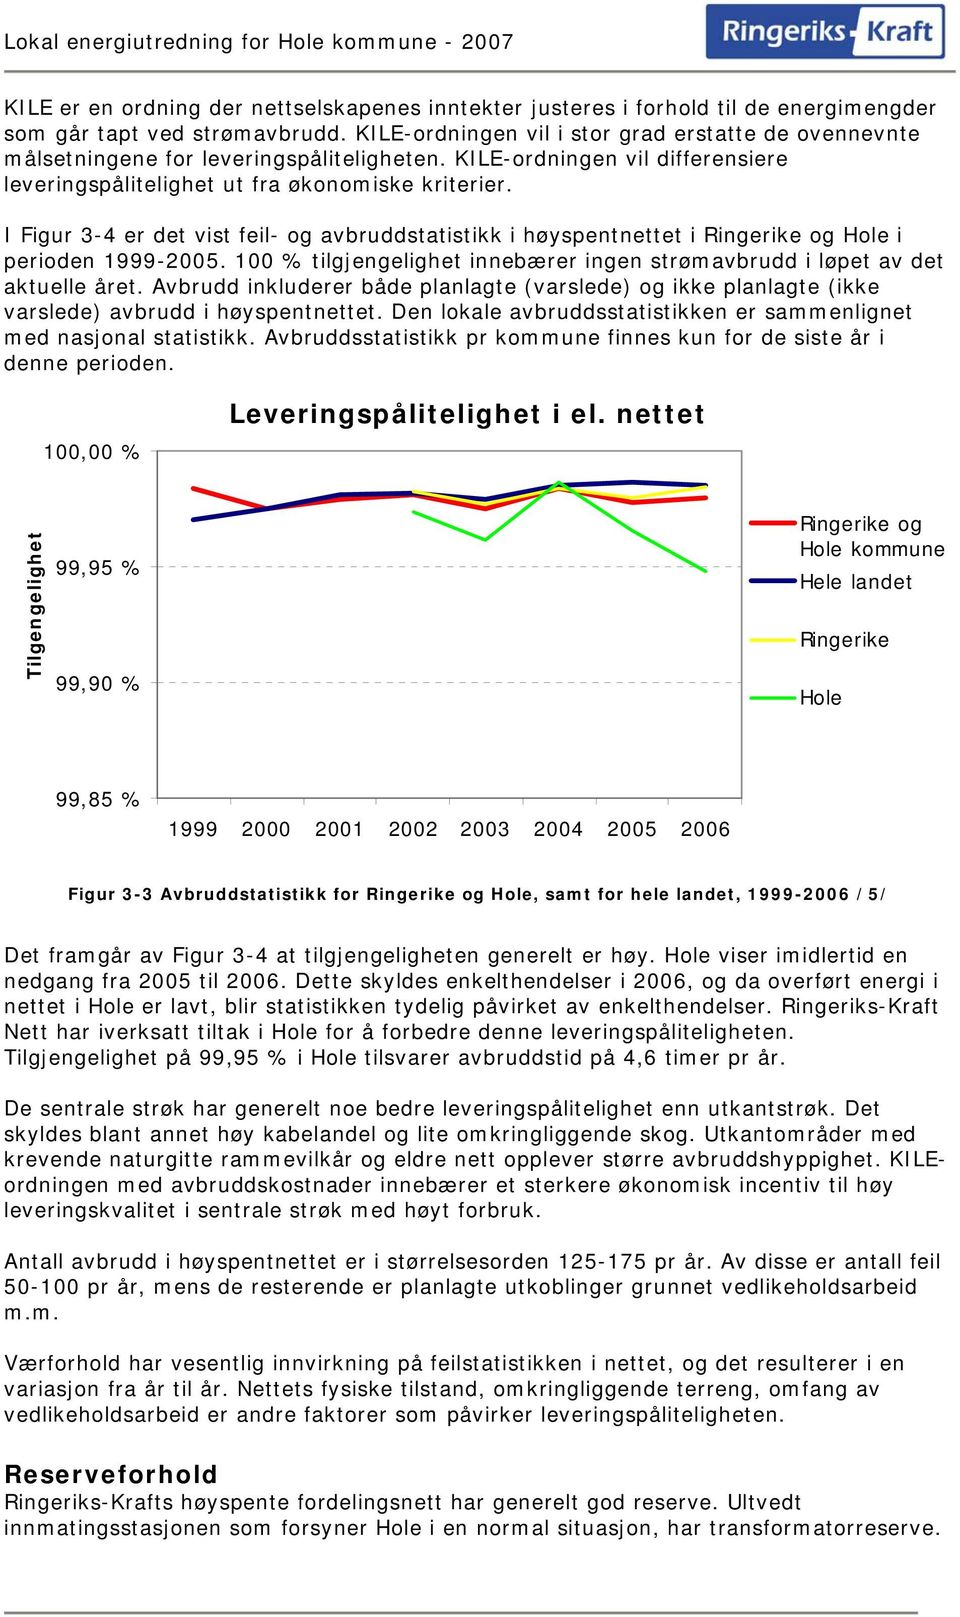 I Figur 3-4 er det vist feil- og avbruddstatistikk i høyspentnettet i Ringerike og Hole i perioden 1999-2005. 100 % tilgjengelighet innebærer ingen strømavbrudd i løpet av det aktuelle året.